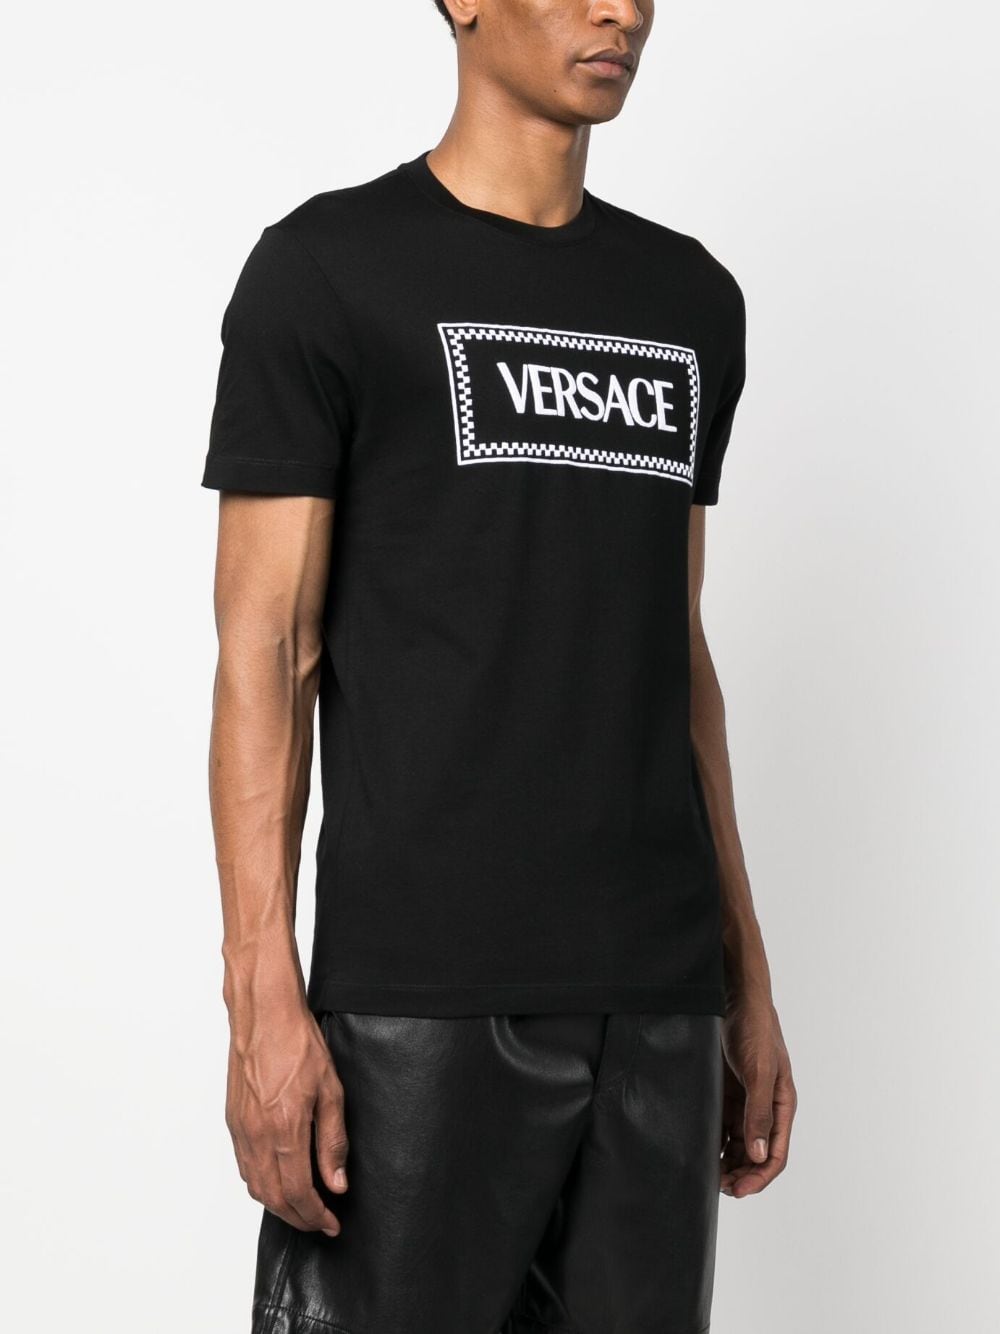 VERSACE Classic Black Cotton T-Shirt for Men